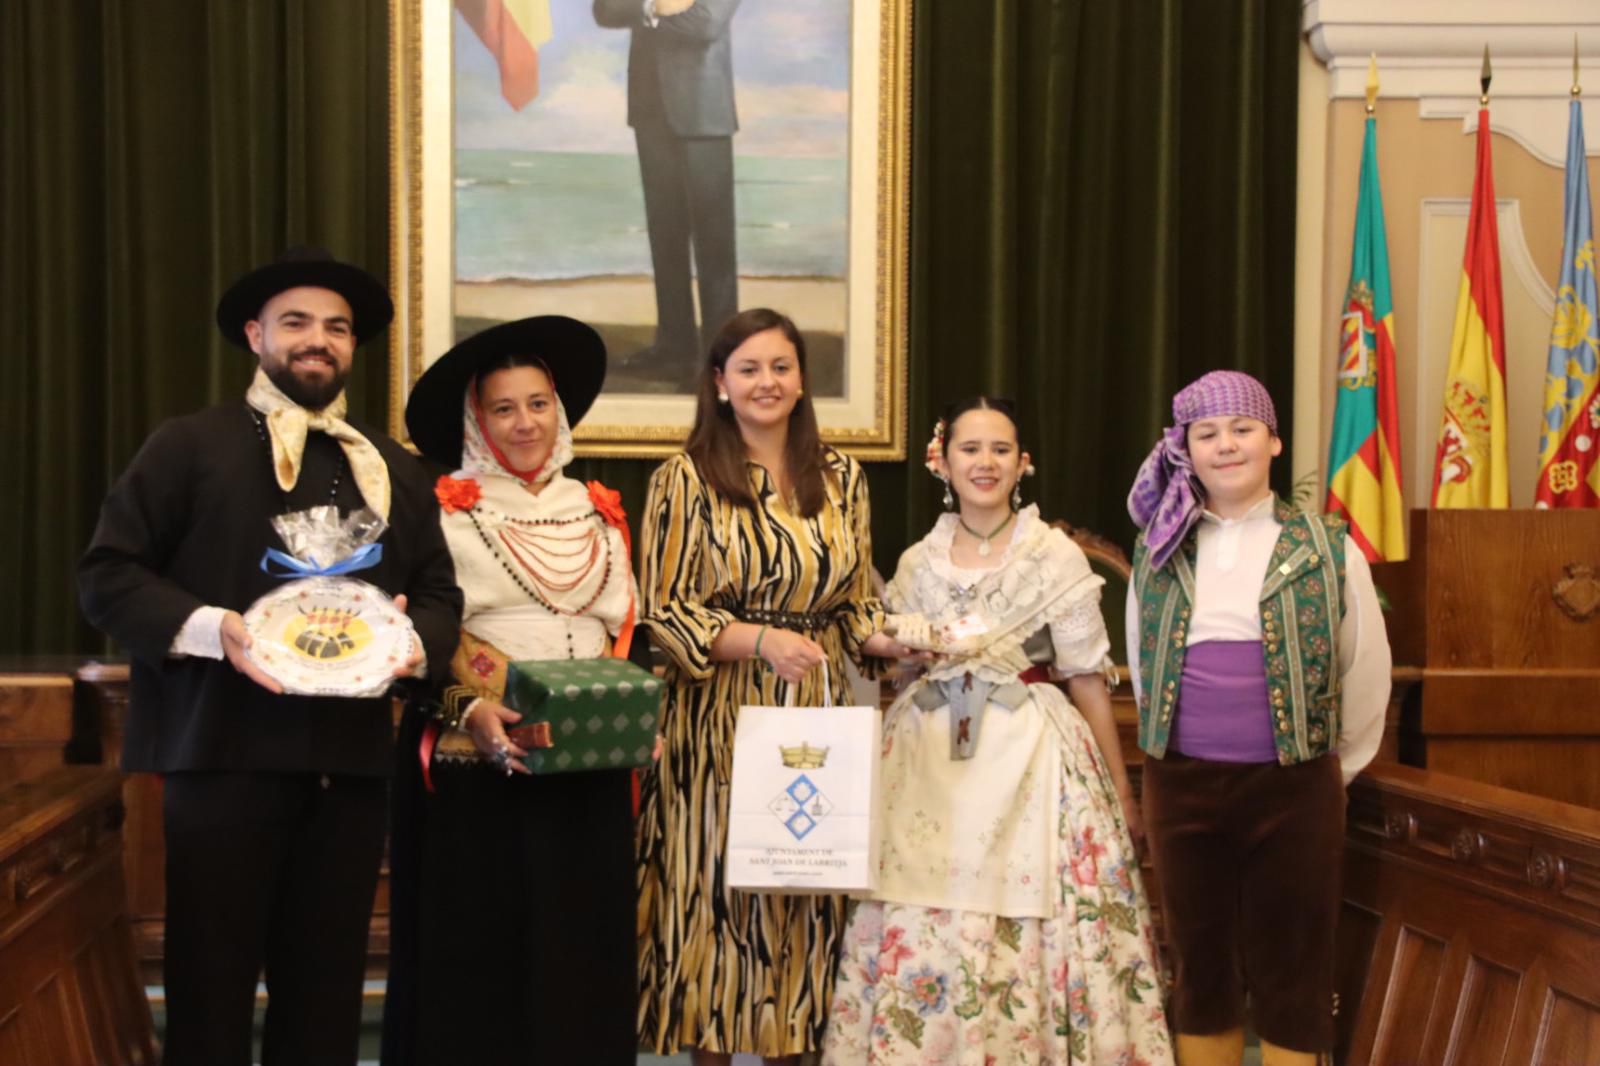 El gobierno municipal recibe a los grupos participantes en el Festival de Danzas de la Antigua Corona de Aragón como muestra de apoyo al folklore y a la música tradicional